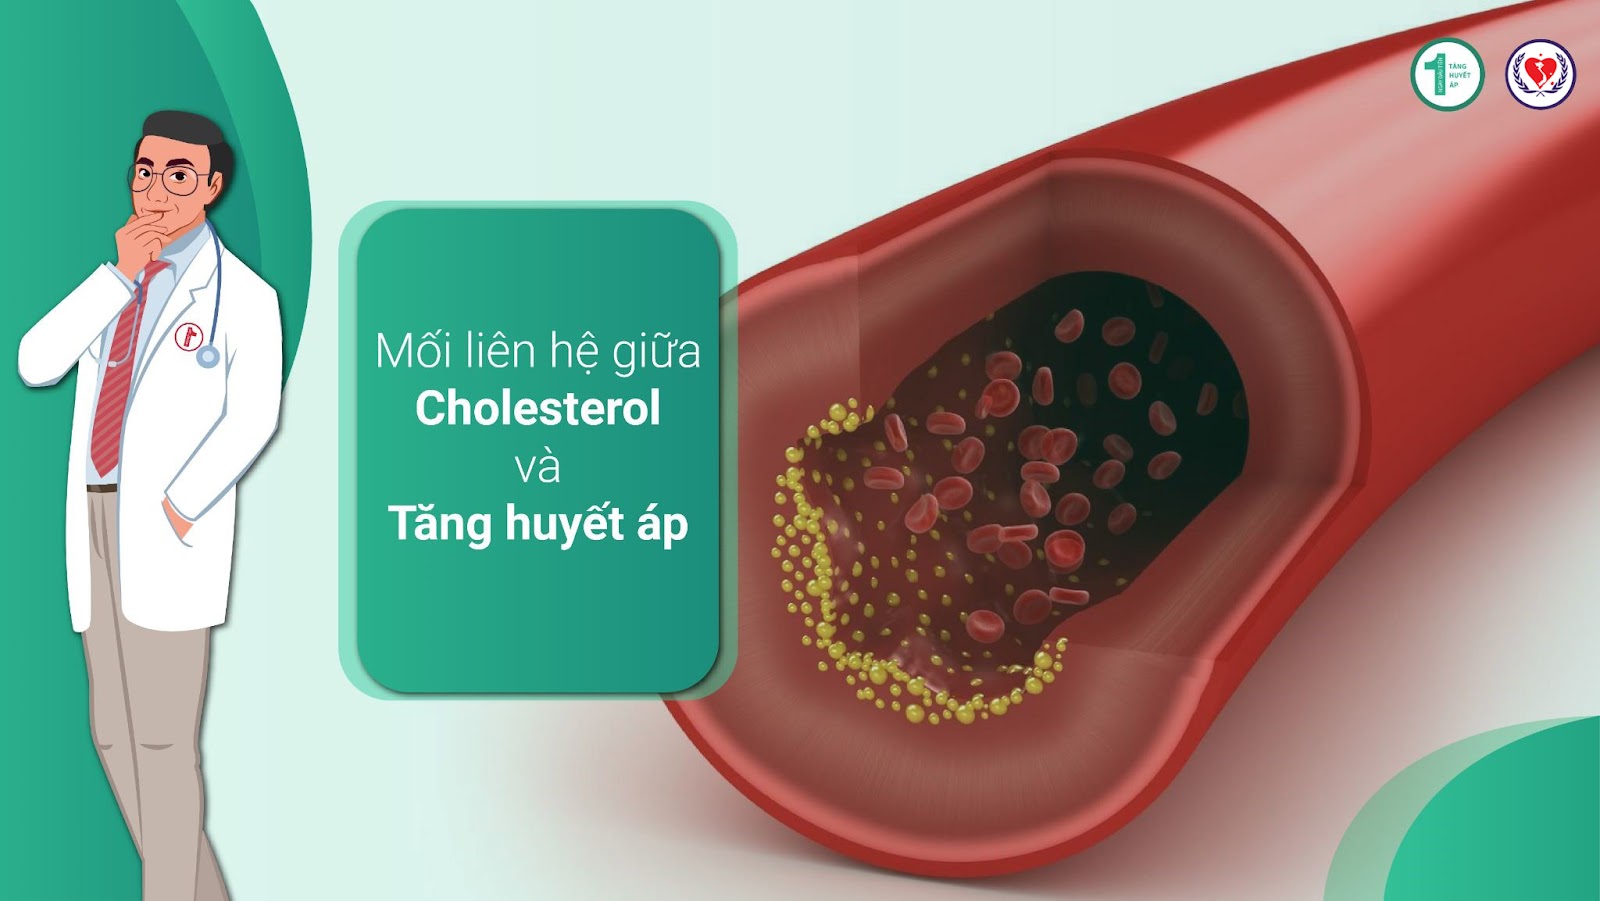 Tăng huyết áp và Cholesterol làm tăng nguy cơ suy tim 4